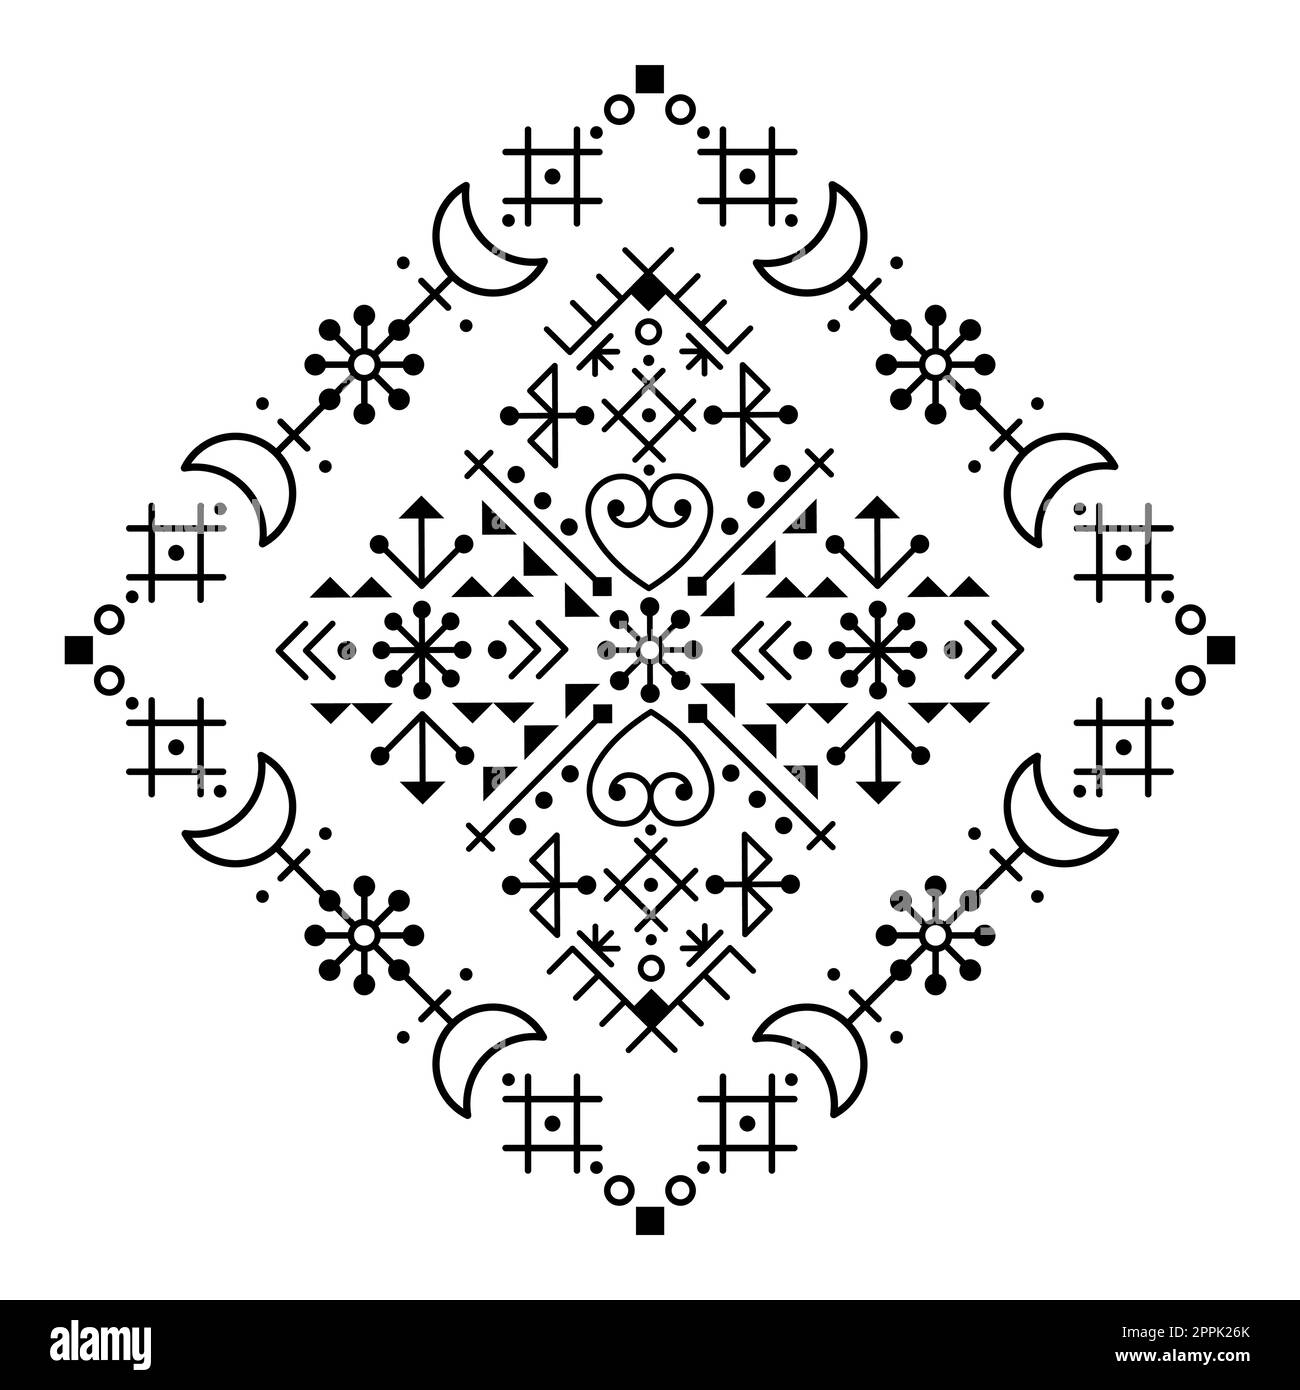 Décoration de style art folklorique de la rune islandaise au style tribal avec des lunes, des fleurs et des formes géométriques Illustration de Vecteur